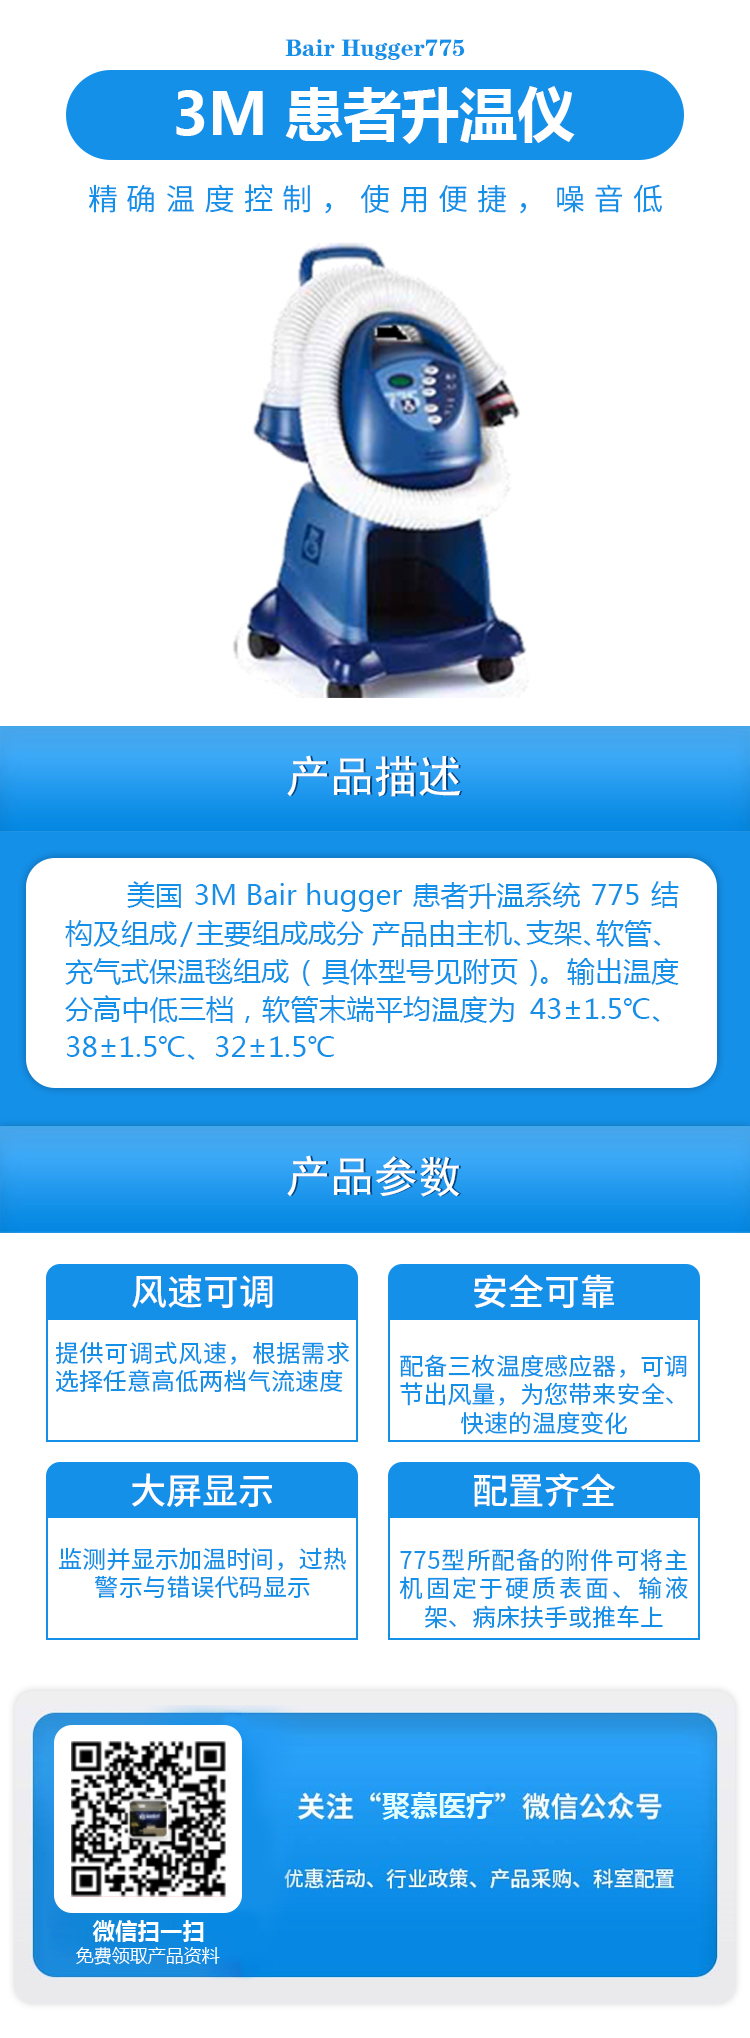 3M患者升温系统Bair Hugger775升温仪.jpg